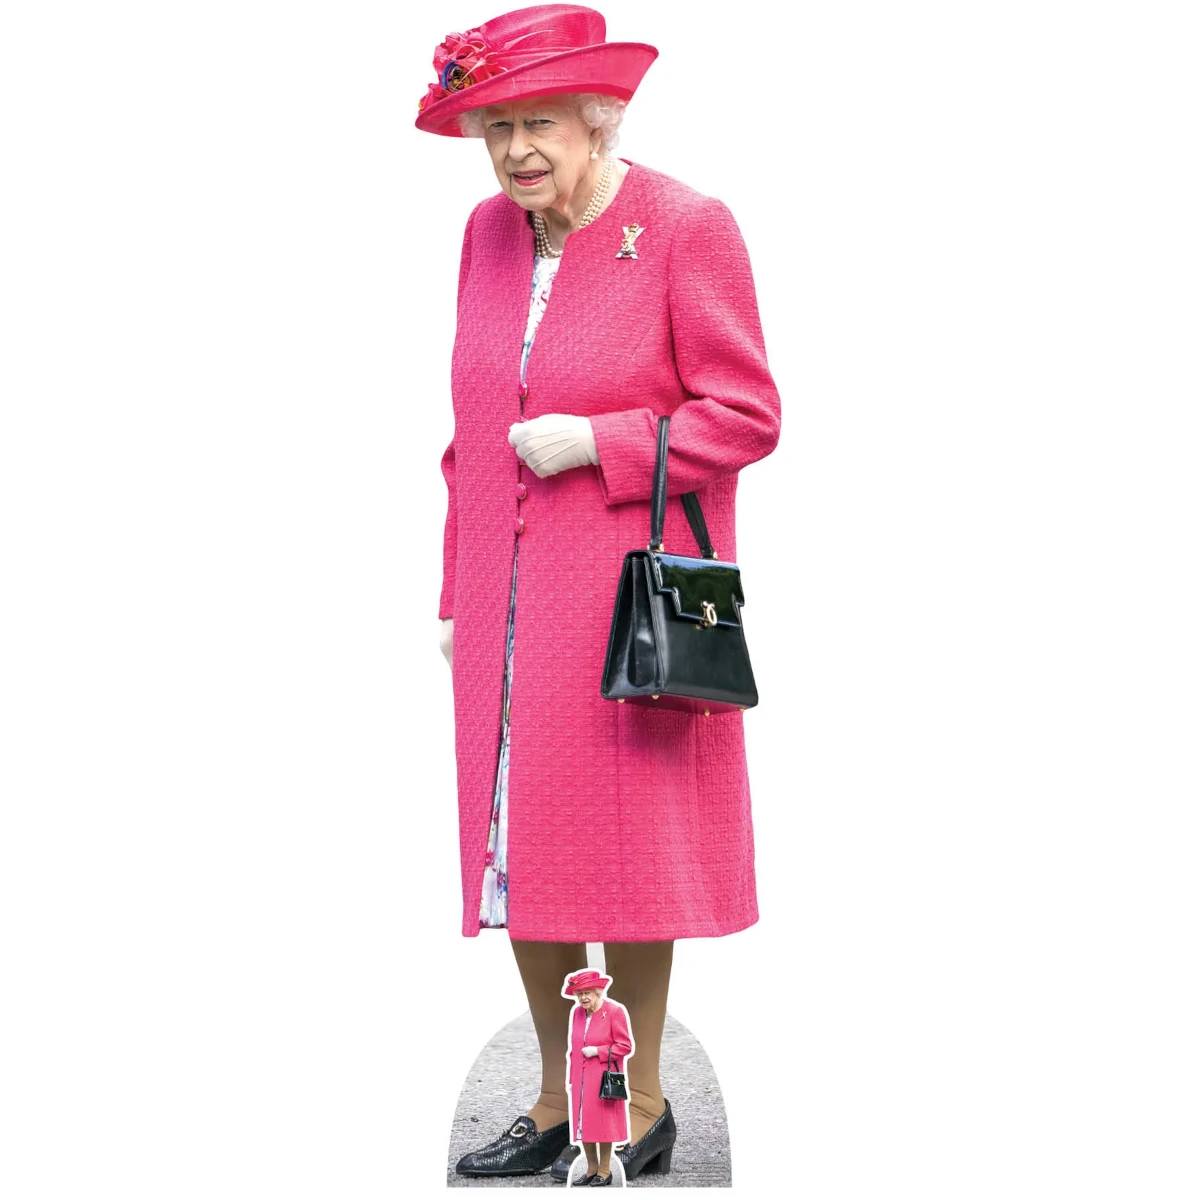 SC4053 Queen Elizabeth II 'Pink Coat' (Former Queen) Lifesize + Mini Cardboard Cutout Standee Front